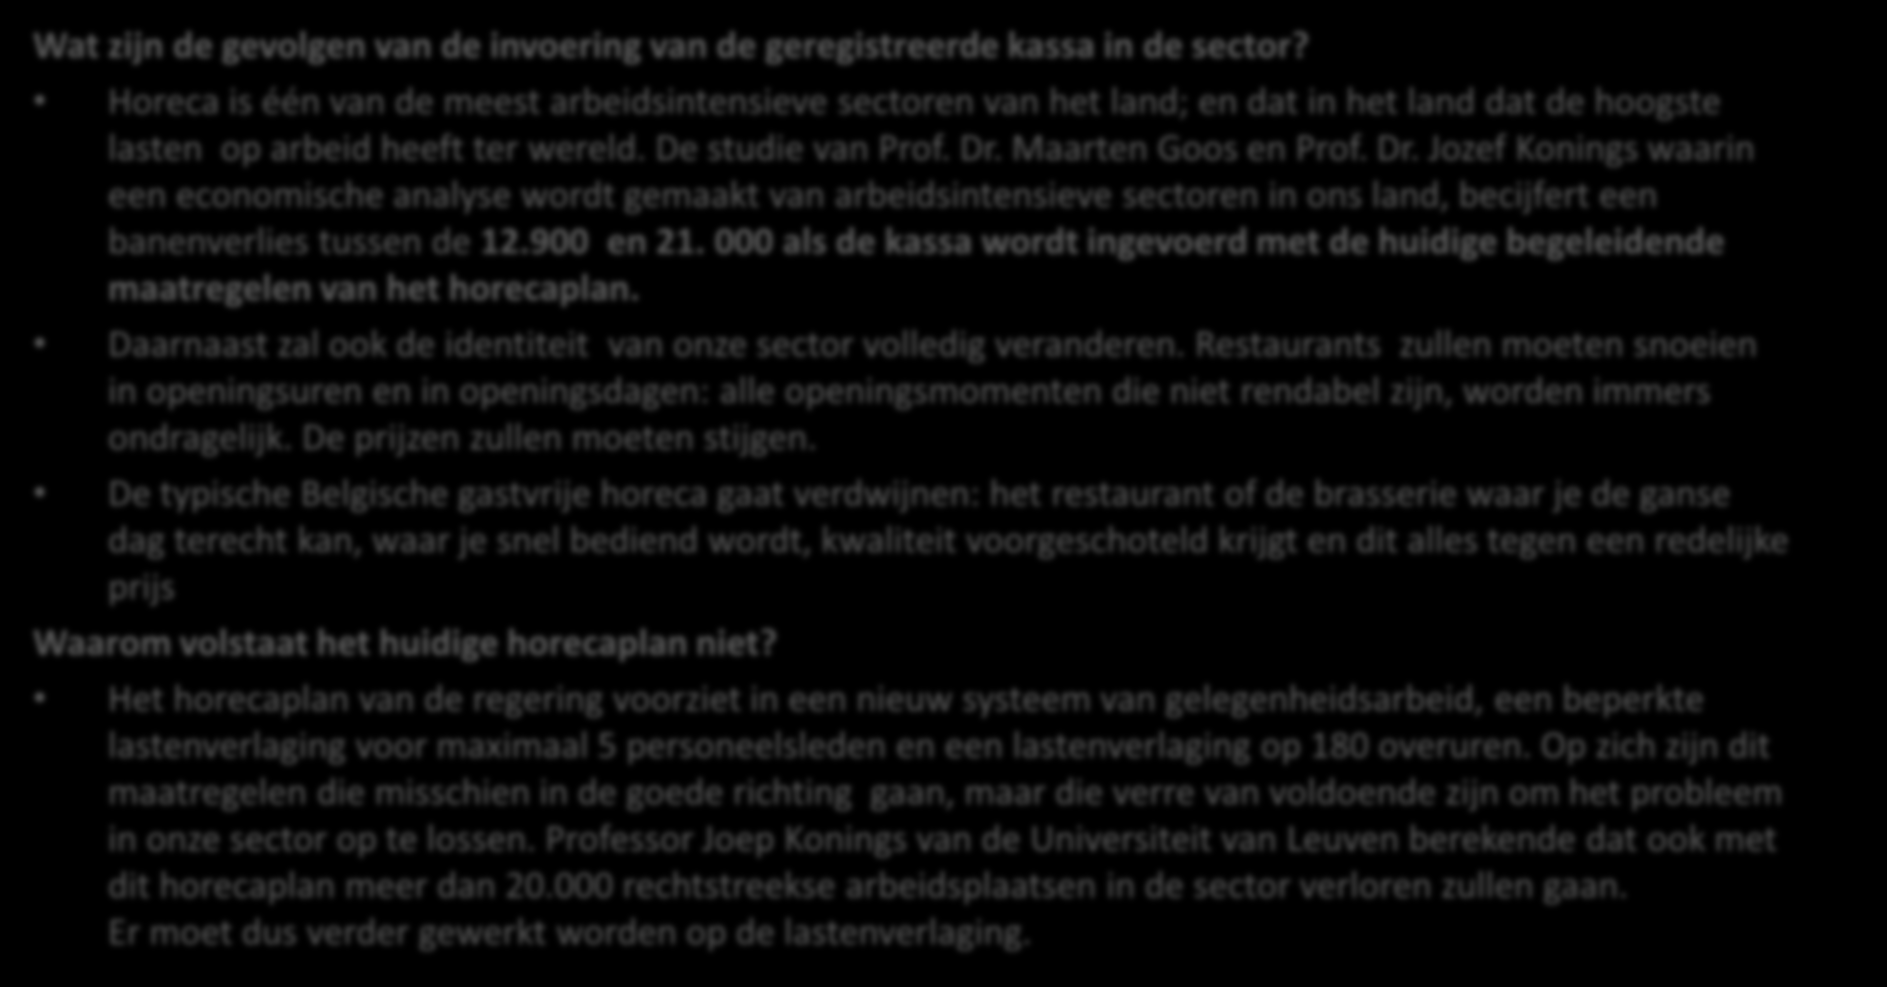 Bijlage: Q&A intrekken kassawet (horeca Vlaanderen) Wat zijn de gevolgen van de invoering van de geregistreerde kassa in de sector?